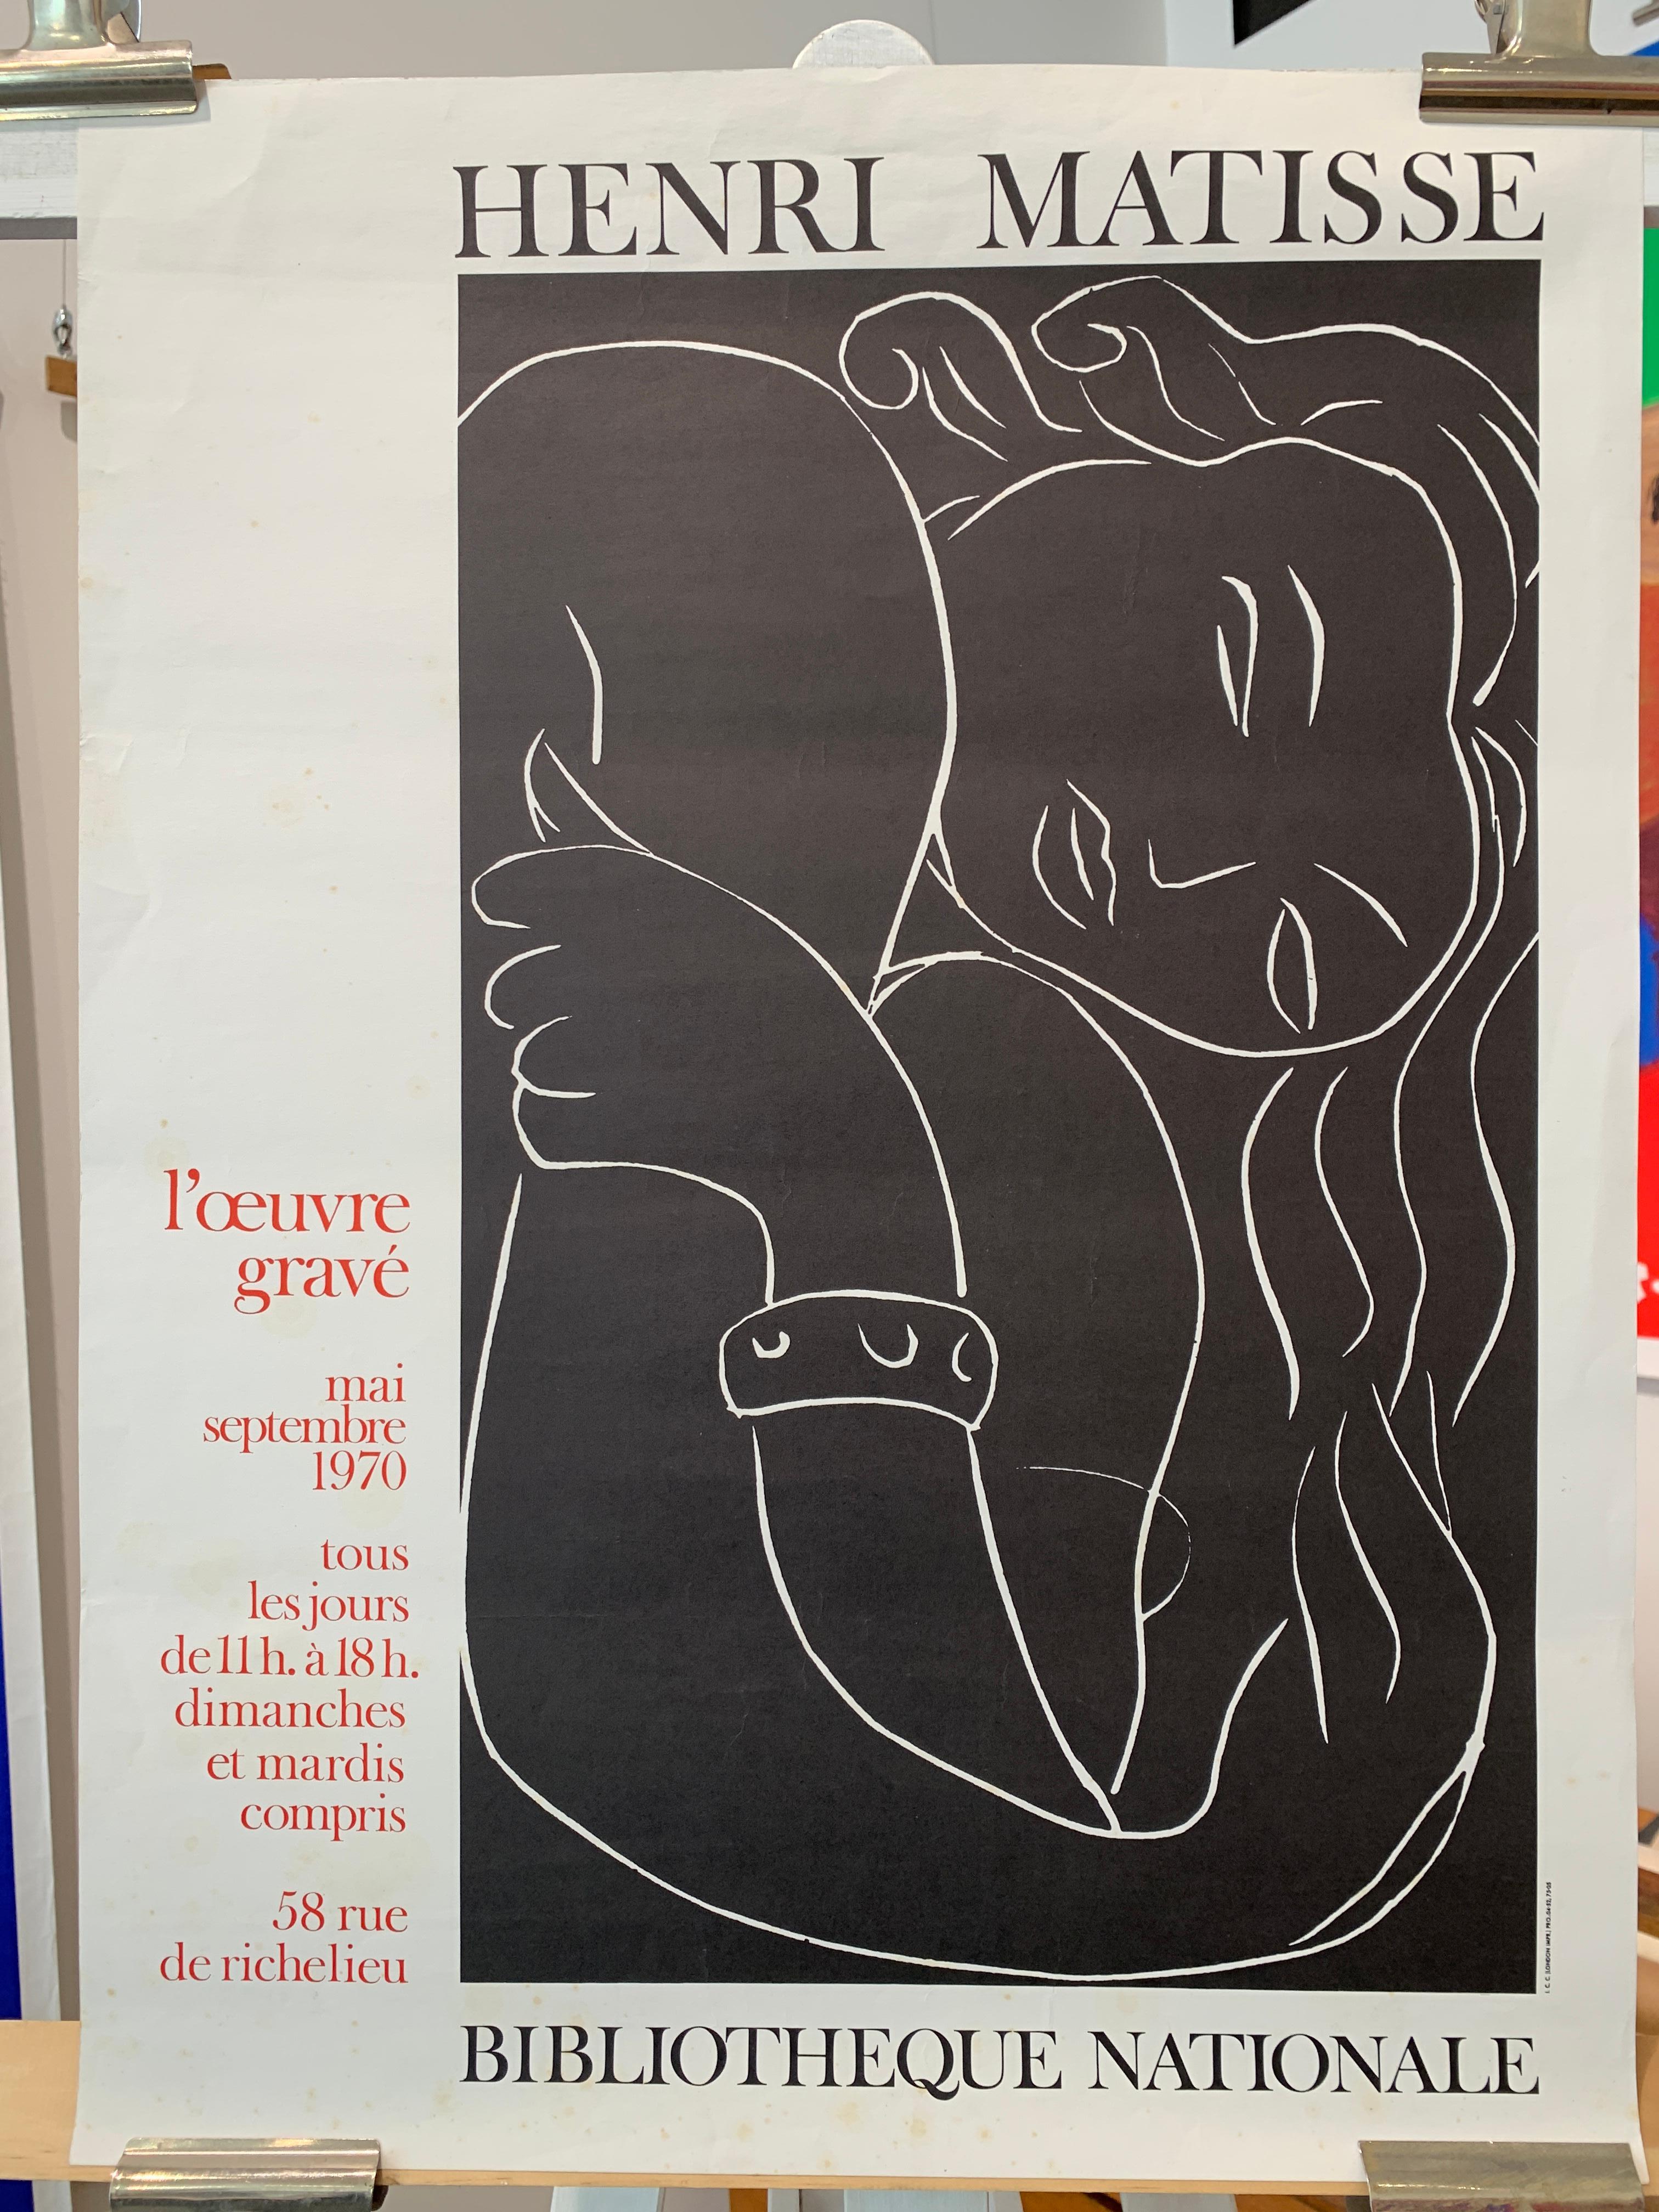 Original-Vintage-Ausstellungsplakat, Henri Matisse, „BIBLIOTHEQUE NATIONALE“, 1970

Es handelt sich um ein Original-Ausstellungsplakat von Henri Matisse aus dem Jahr 1970, der Gesamtzustand ist sehr gut. Leichte Gebrauchsspuren, die dem Alter des